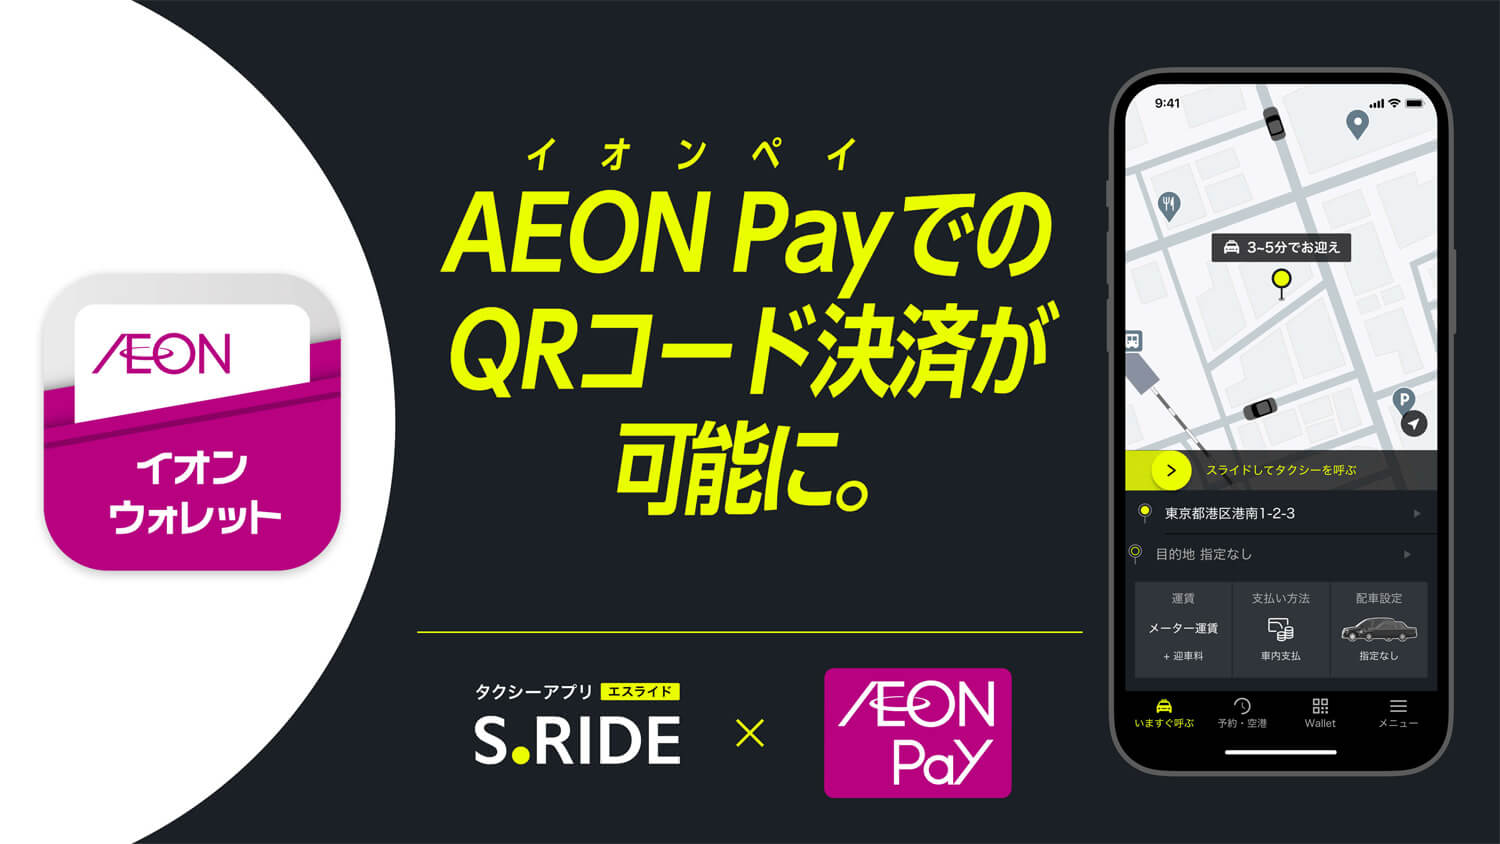 タクシーアプリ「S.RIDE」がコード決済「AEON Pay（イオンペイ）」に対応